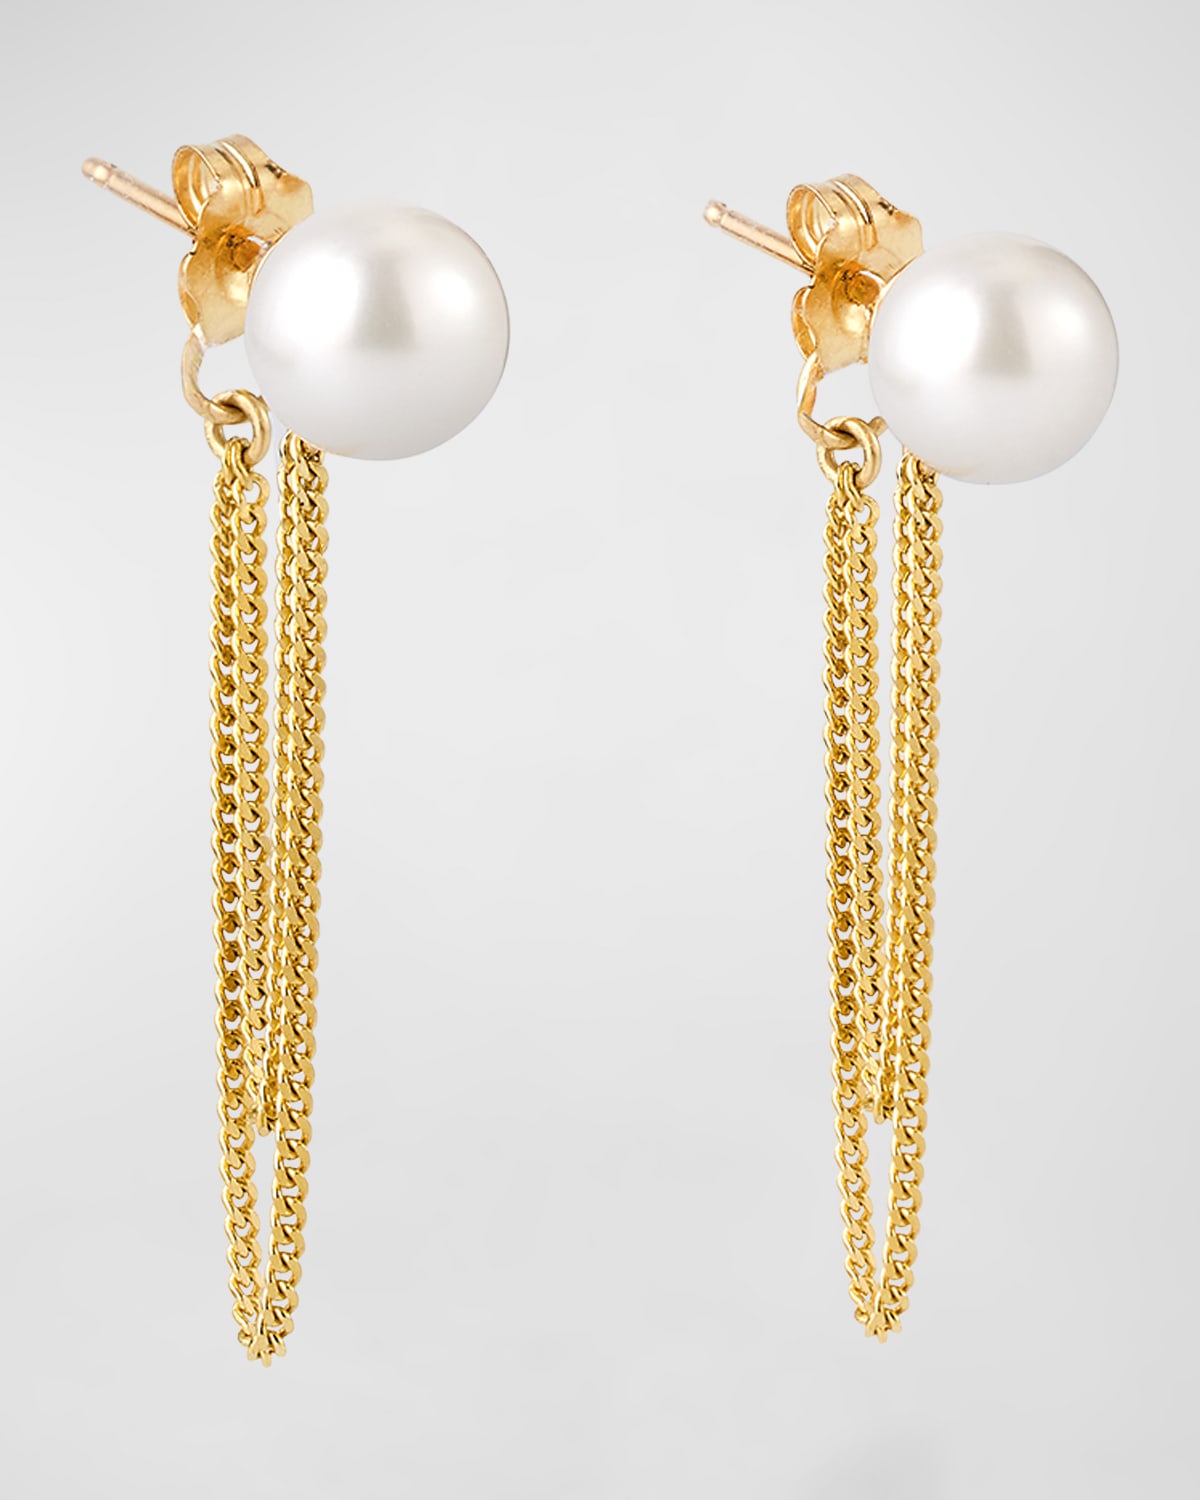 Poppy Finch Double-chain Wrap Around Pearl Earrings